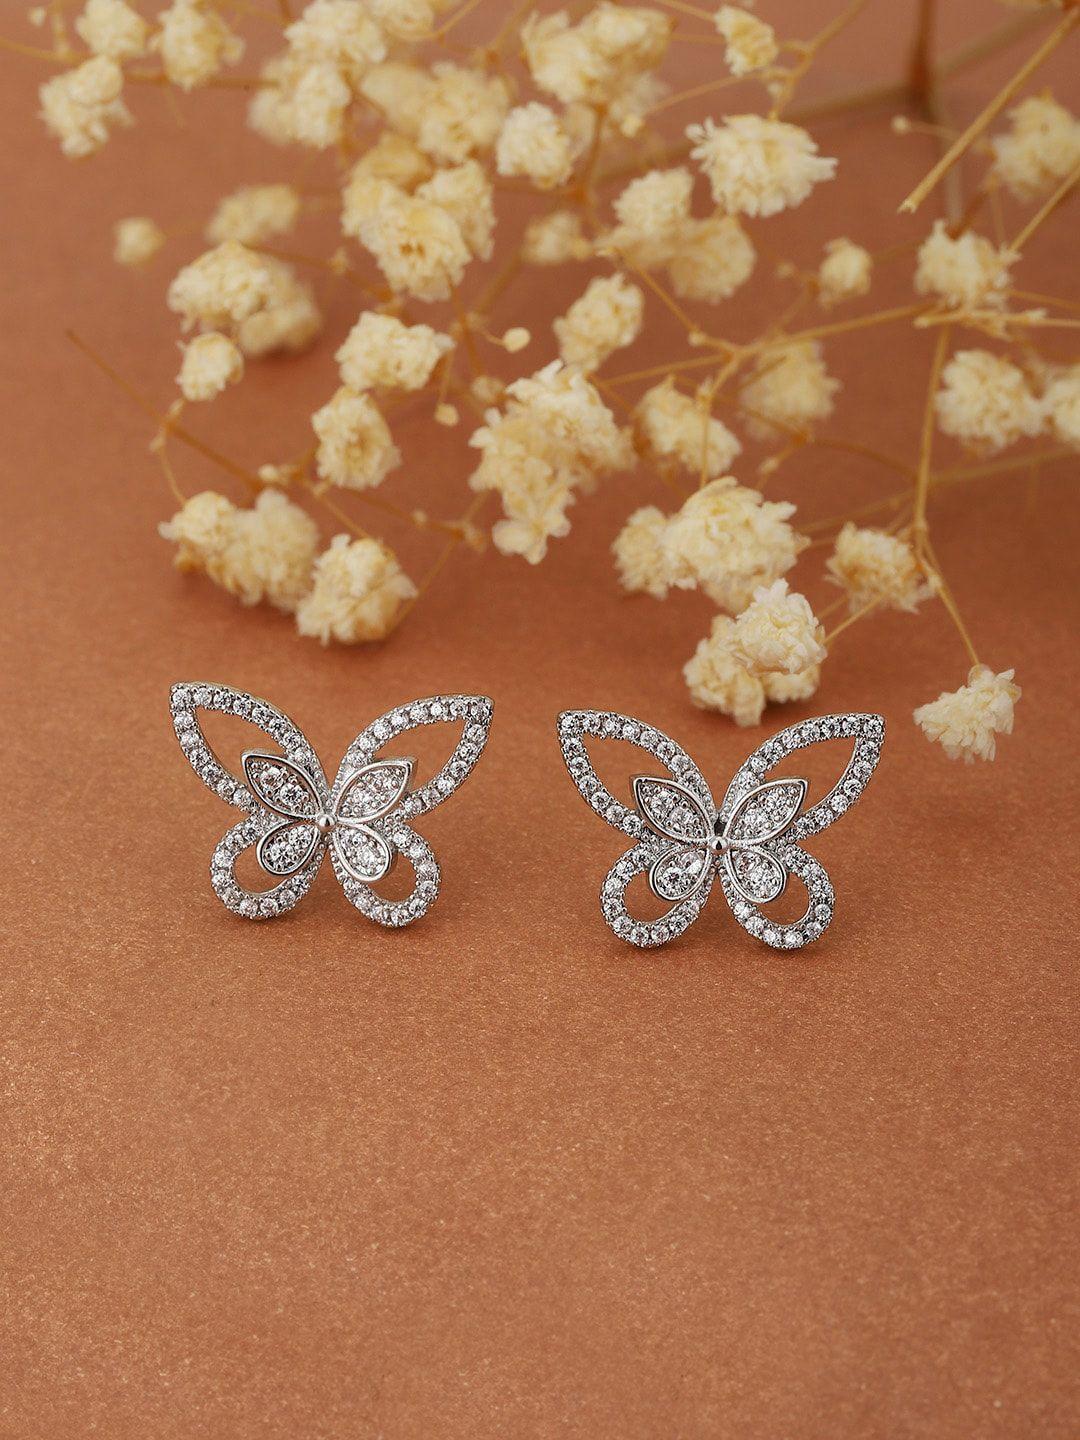 carlton london silver-toned butterfly shaped studs earrings